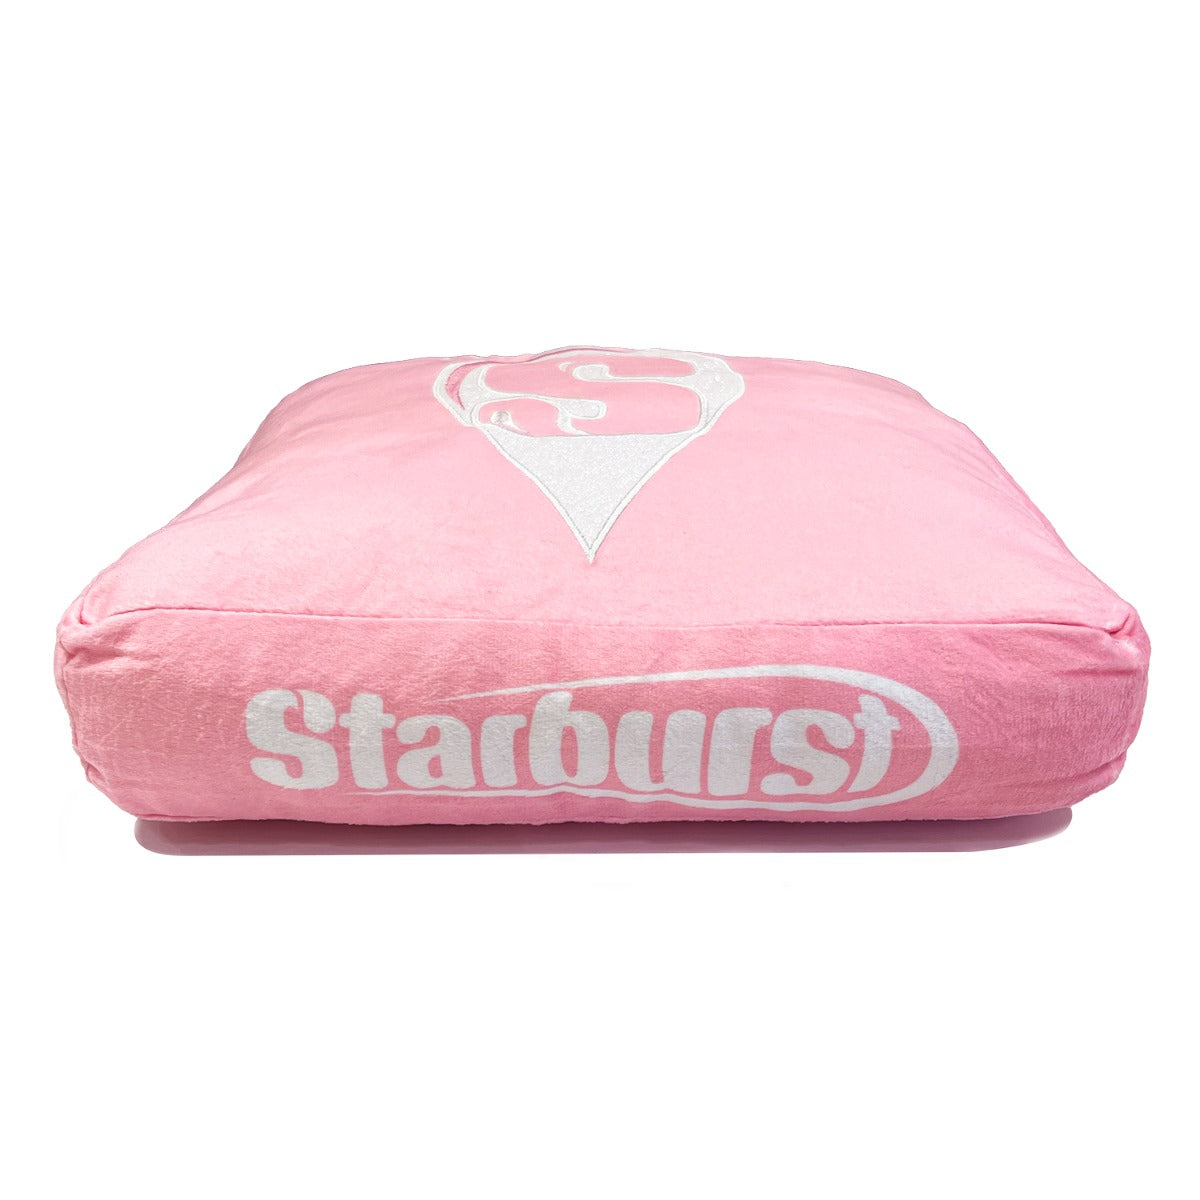 IT'SUGAR | Starburst Plush Pillow - Red | Popular Brands